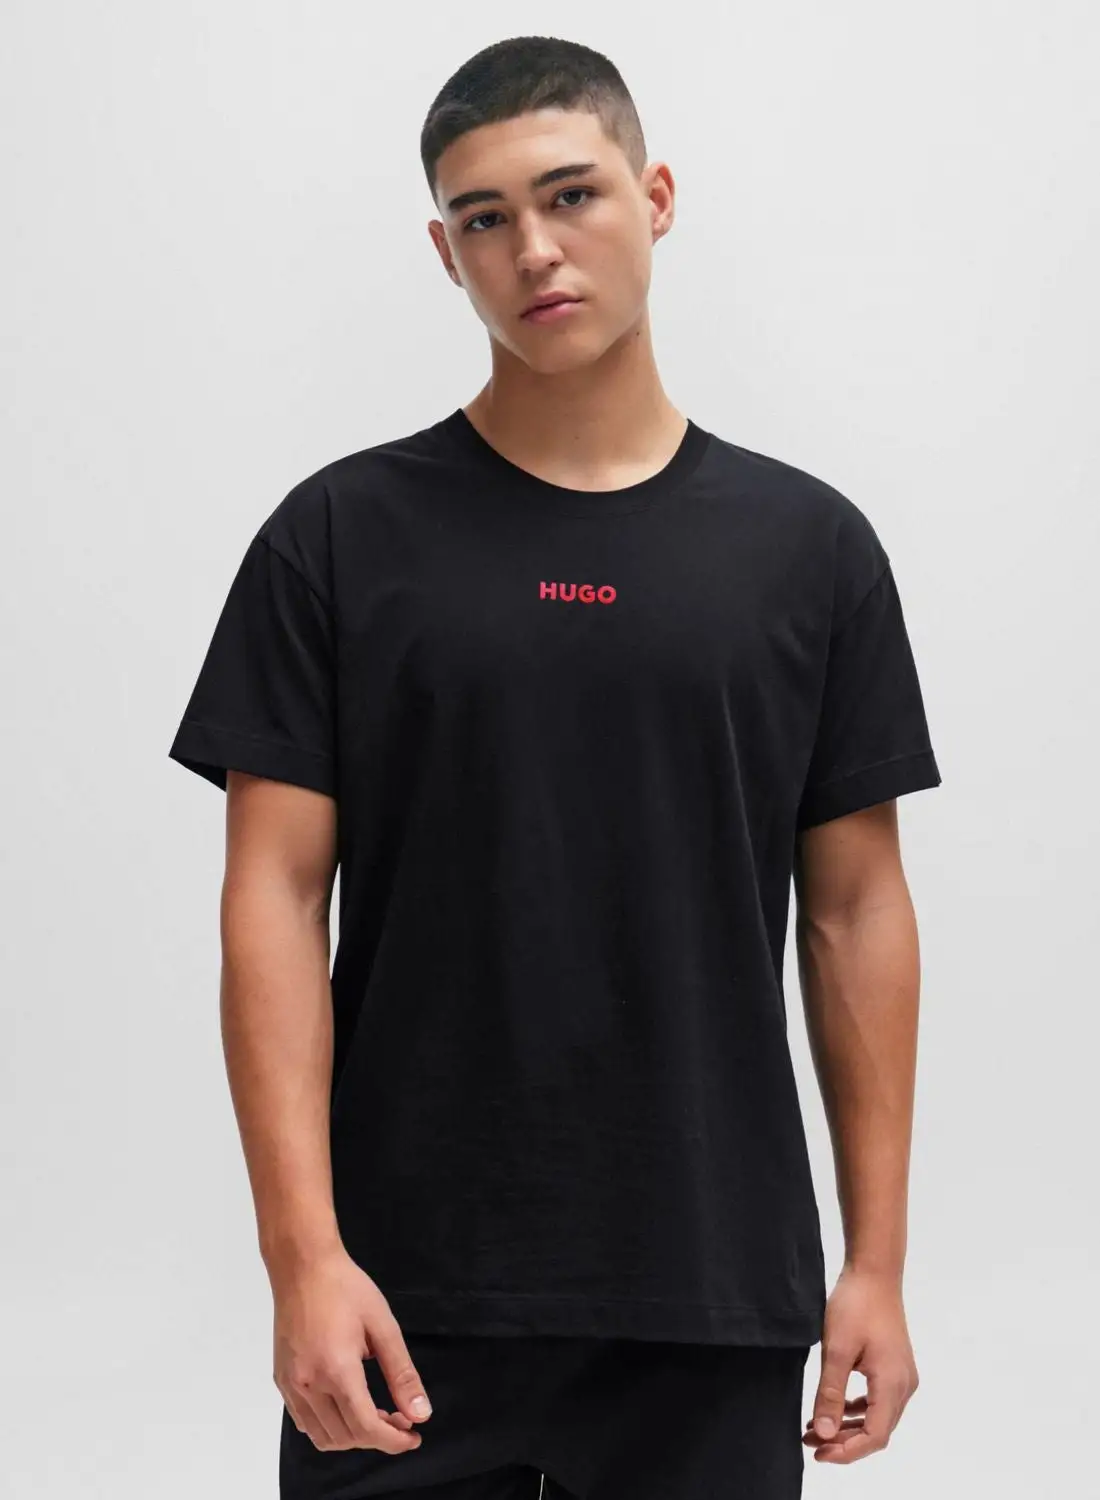 HUGO Logo Printed T-Shirt & Shorts Set